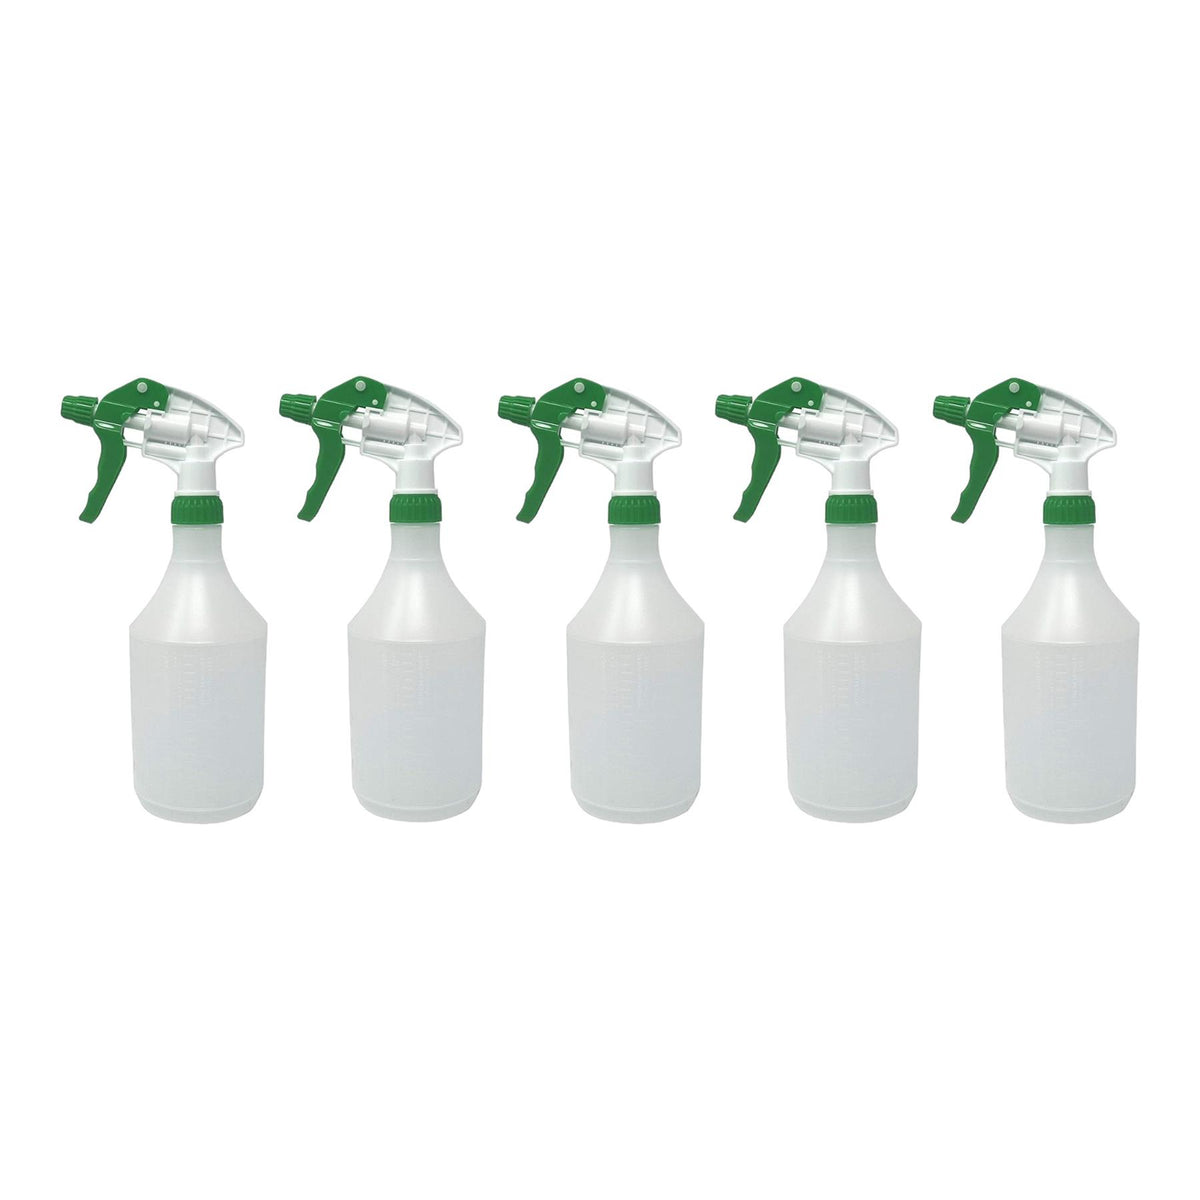 Pack Of 5 Reusable Green Trigger Spray Bottle 750ml Heavy Duty